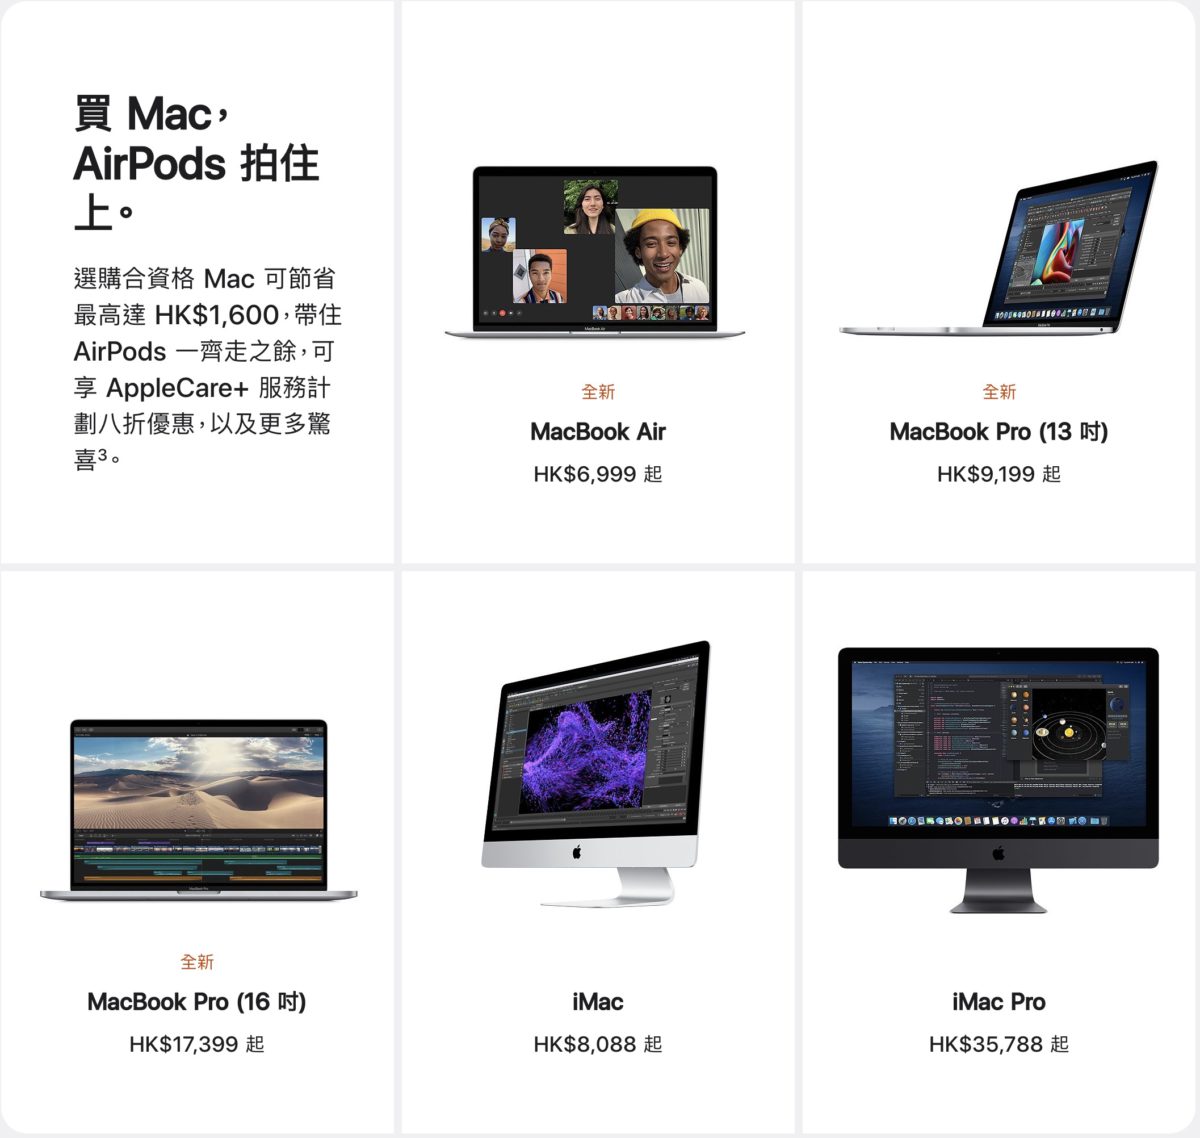 MacBook Pro 16" 優惠高達 $1,600 。